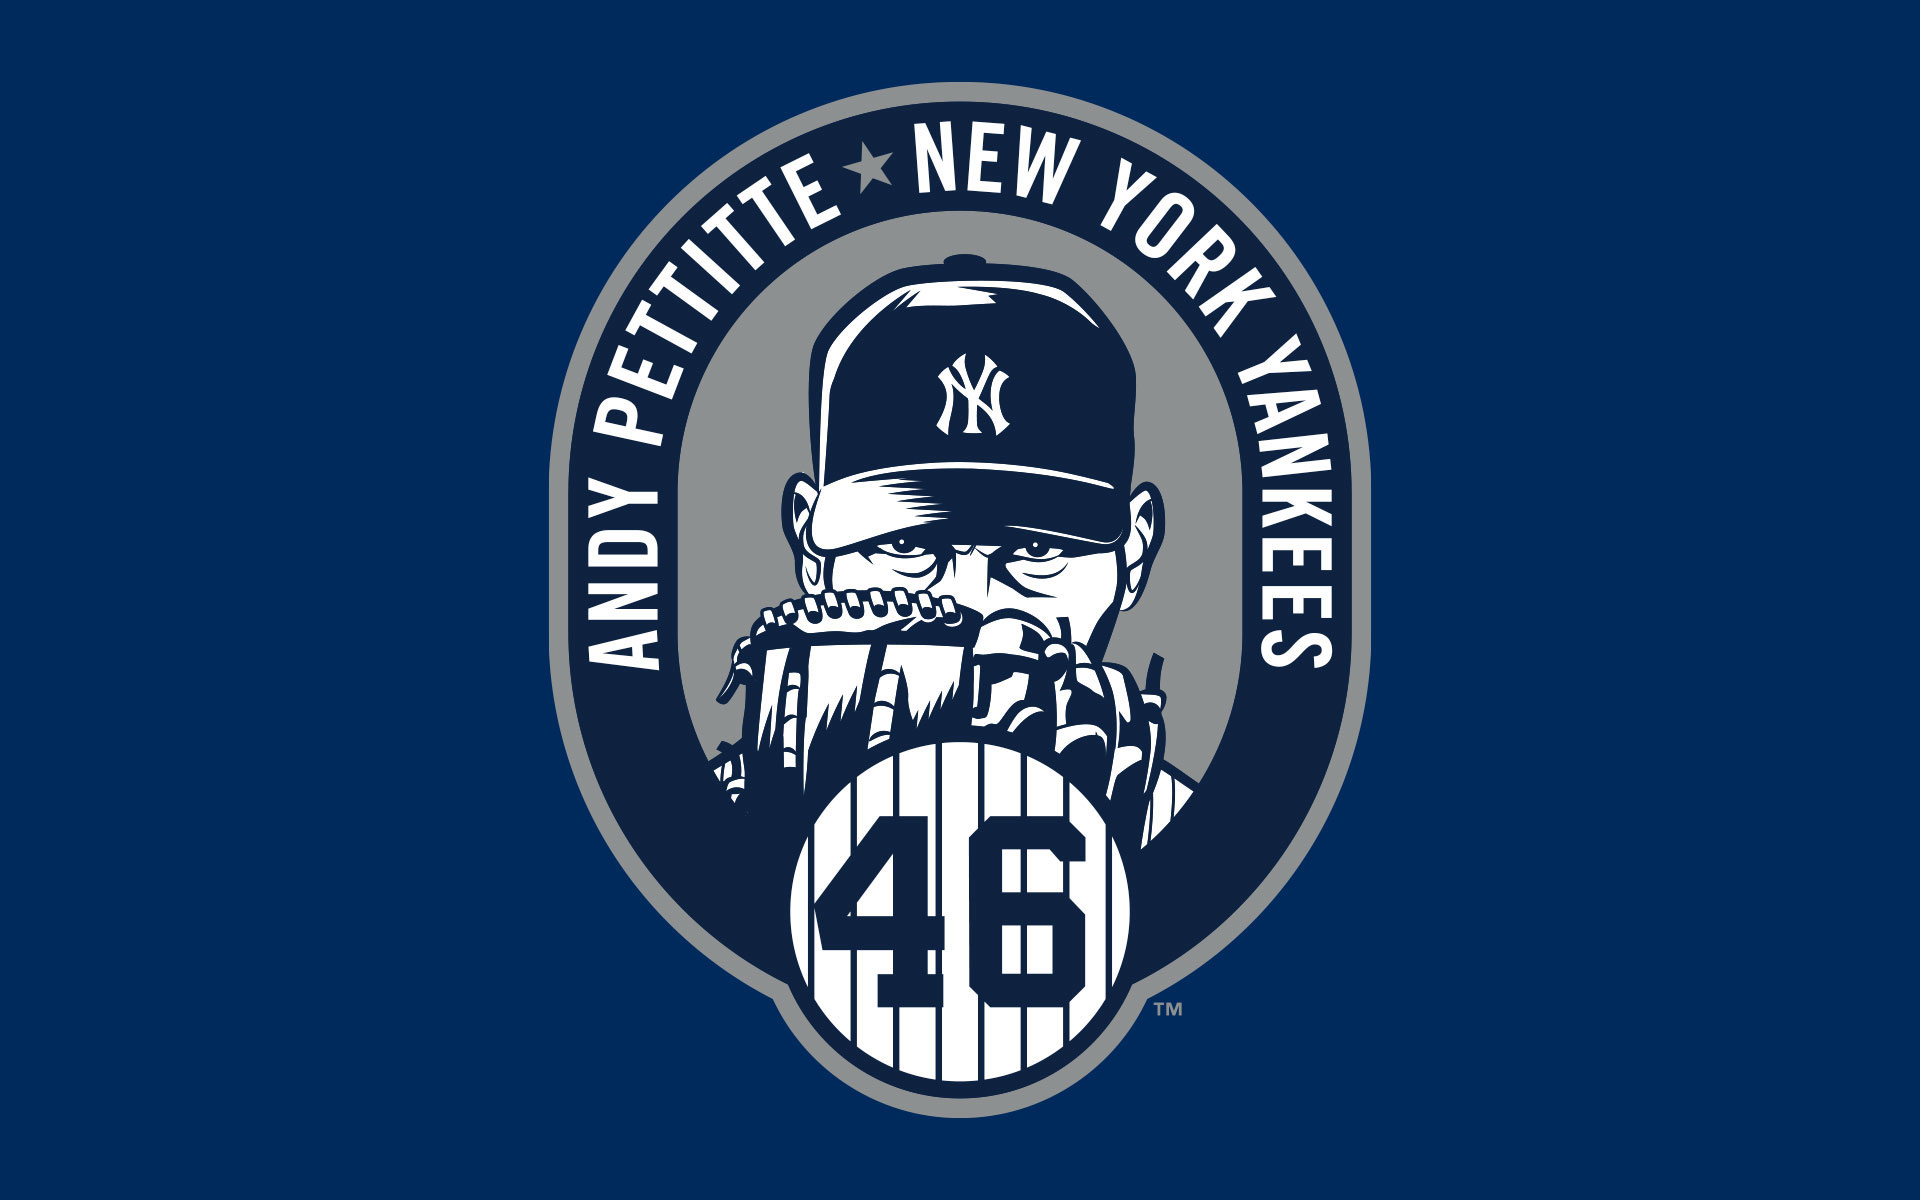 Yankees New York Wallpapers Hd - HD Wallpaper 